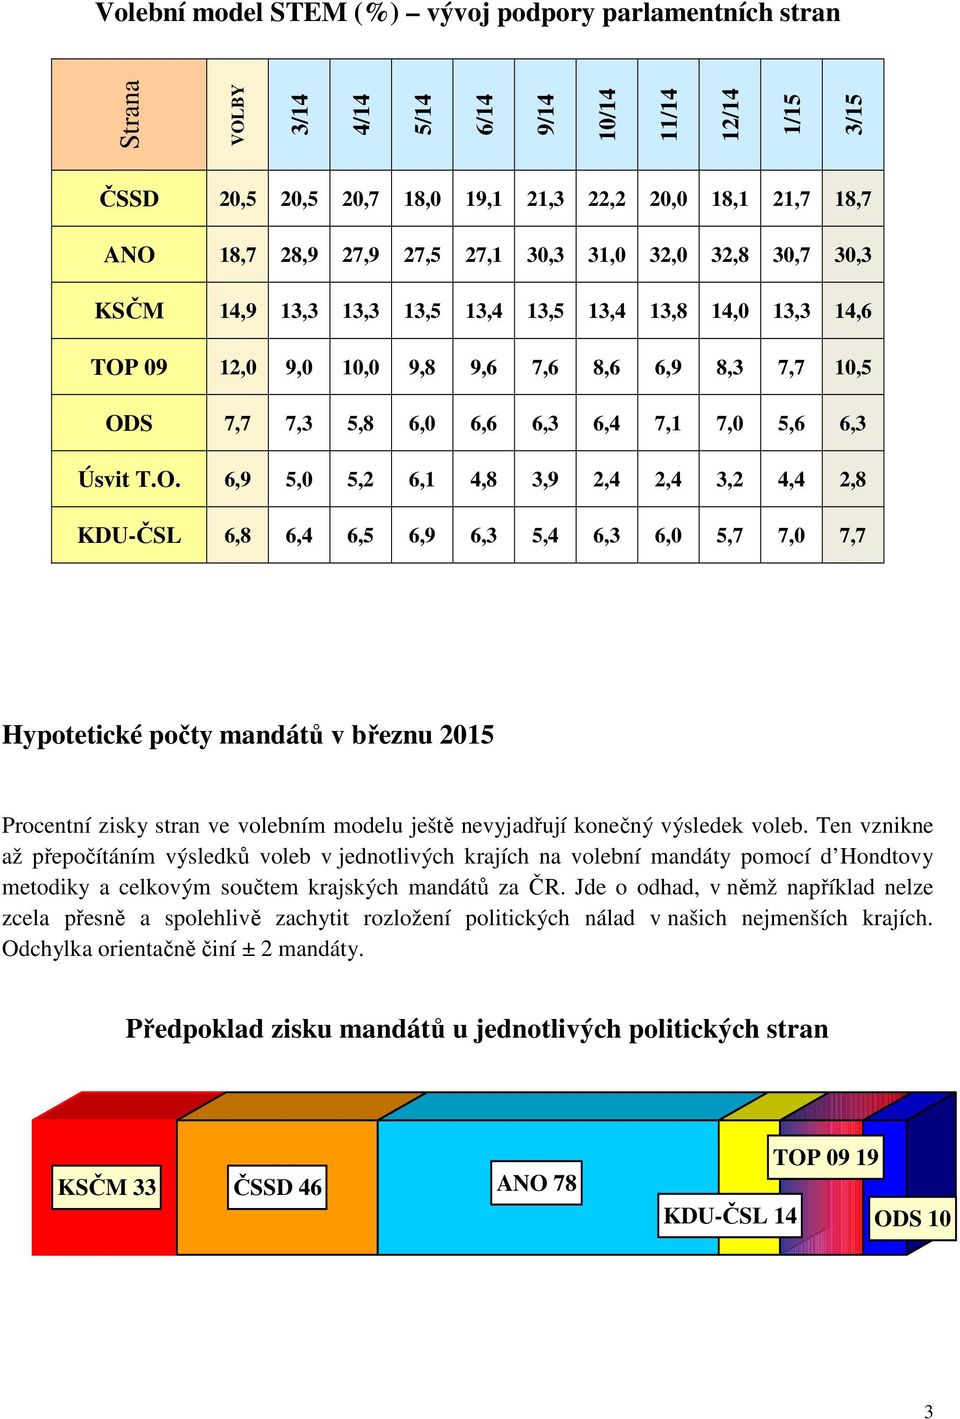 O. 6,9 5,0 5,2 6,1,8 3,9 2, 2, 3,2 2,8 KDU-ČSL 6,8 6, 6,5 6,9 6,3 5, 6,3 6,0 5,7 7,0 7,7 Hypotetické počty mandátů v březnu 2015 Procentní zisky stran ve volebním modelu ještě nevyjadřují konečný